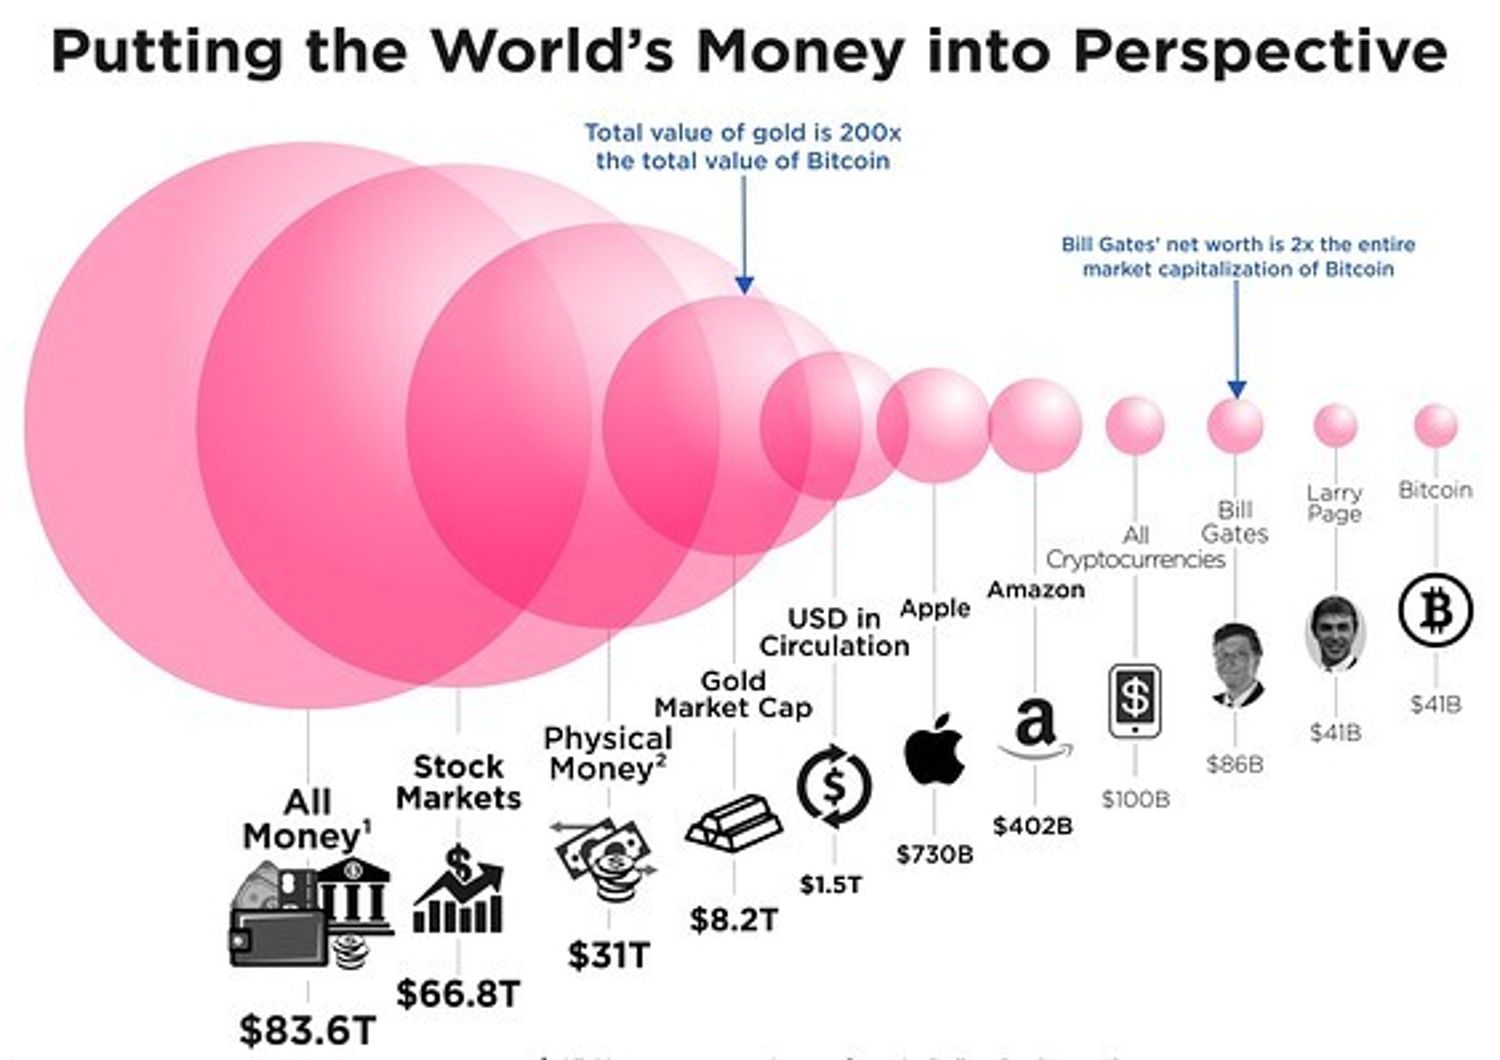 Quanto vale davvero Bitcoin? Questa infografica ci d&agrave; una prospettiva precisa&nbsp;